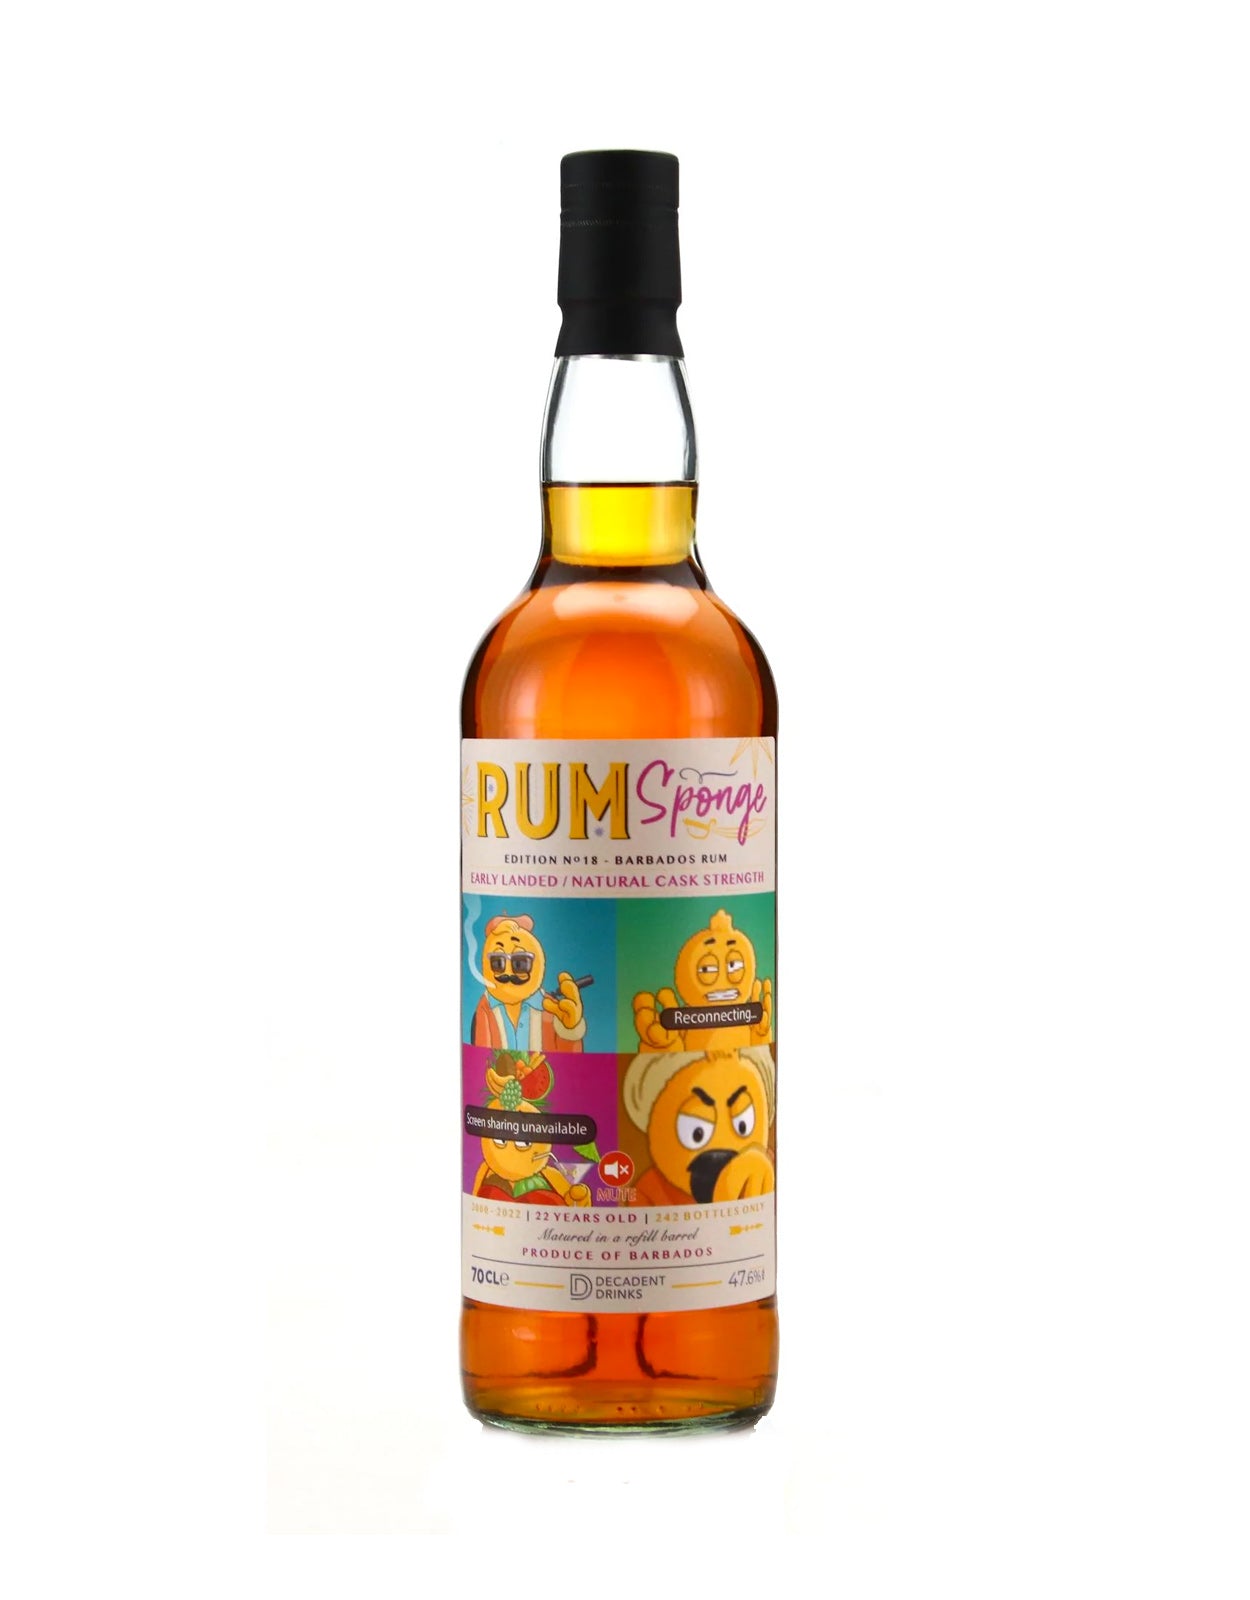 Rum Sponge Barbados 2000 22 Year Old Edition No.18